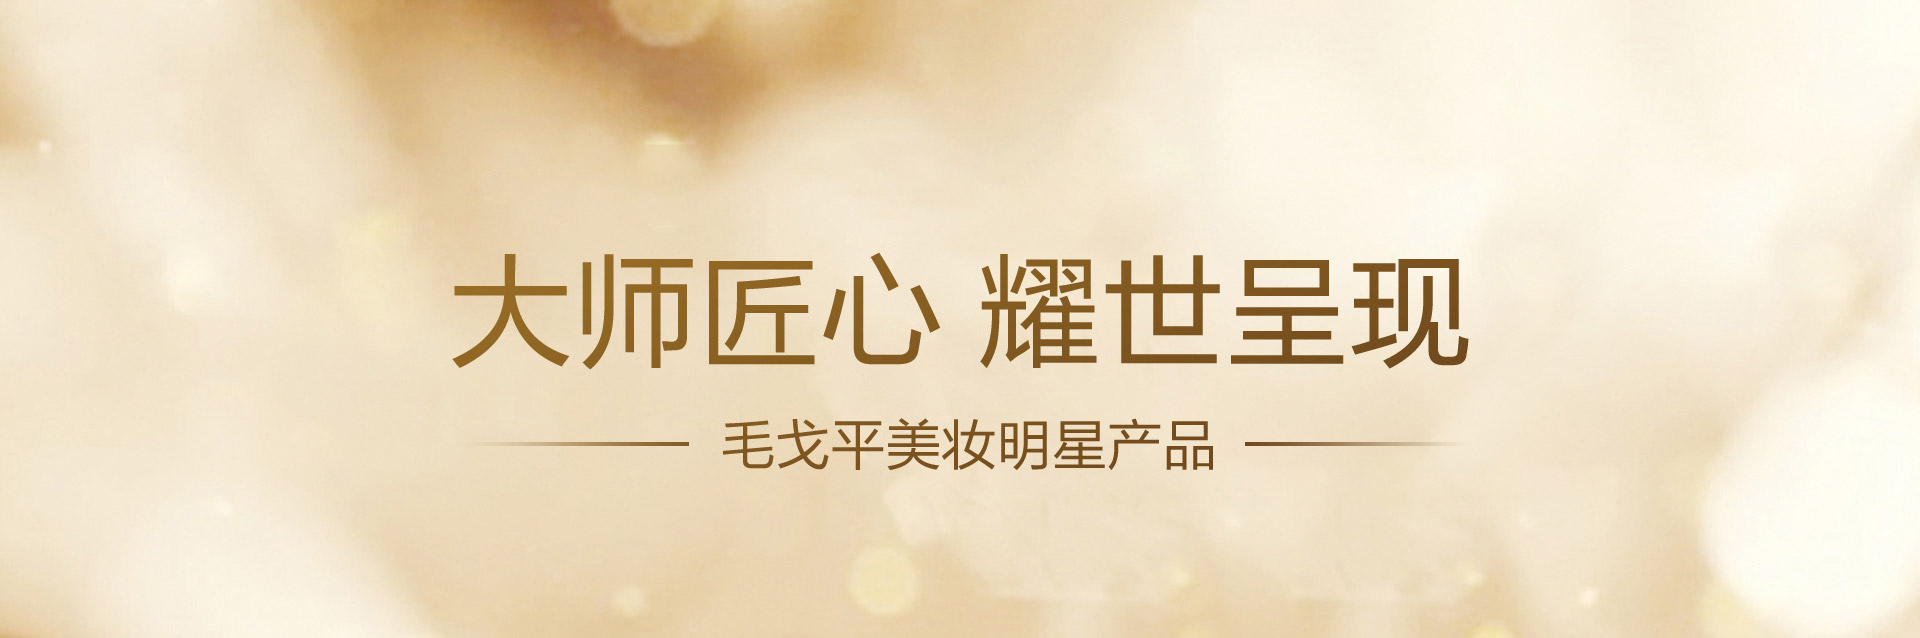 酷游ku游官网最新地址
美妆明星产品